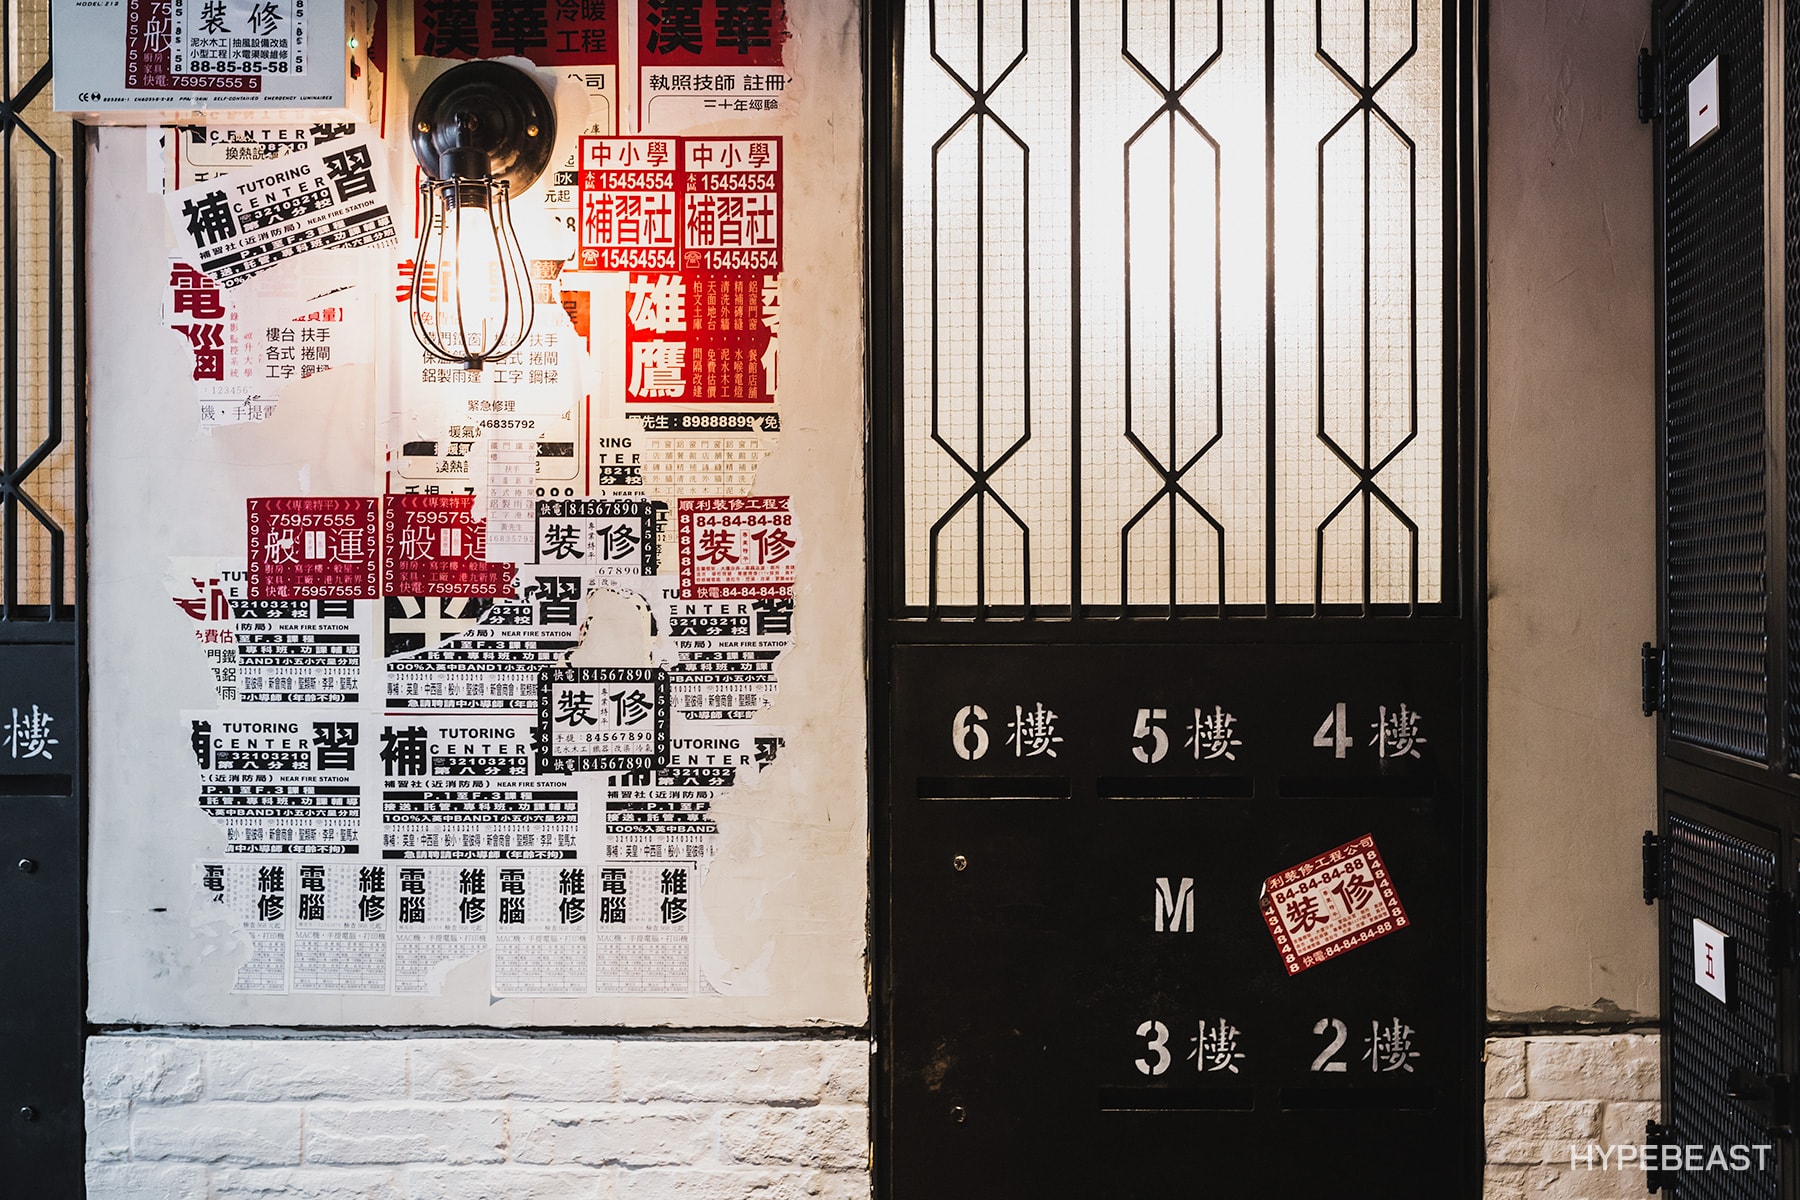 HYPEBEAST Eats... 呈現香港獨有餐廳特色之「十字冰室」